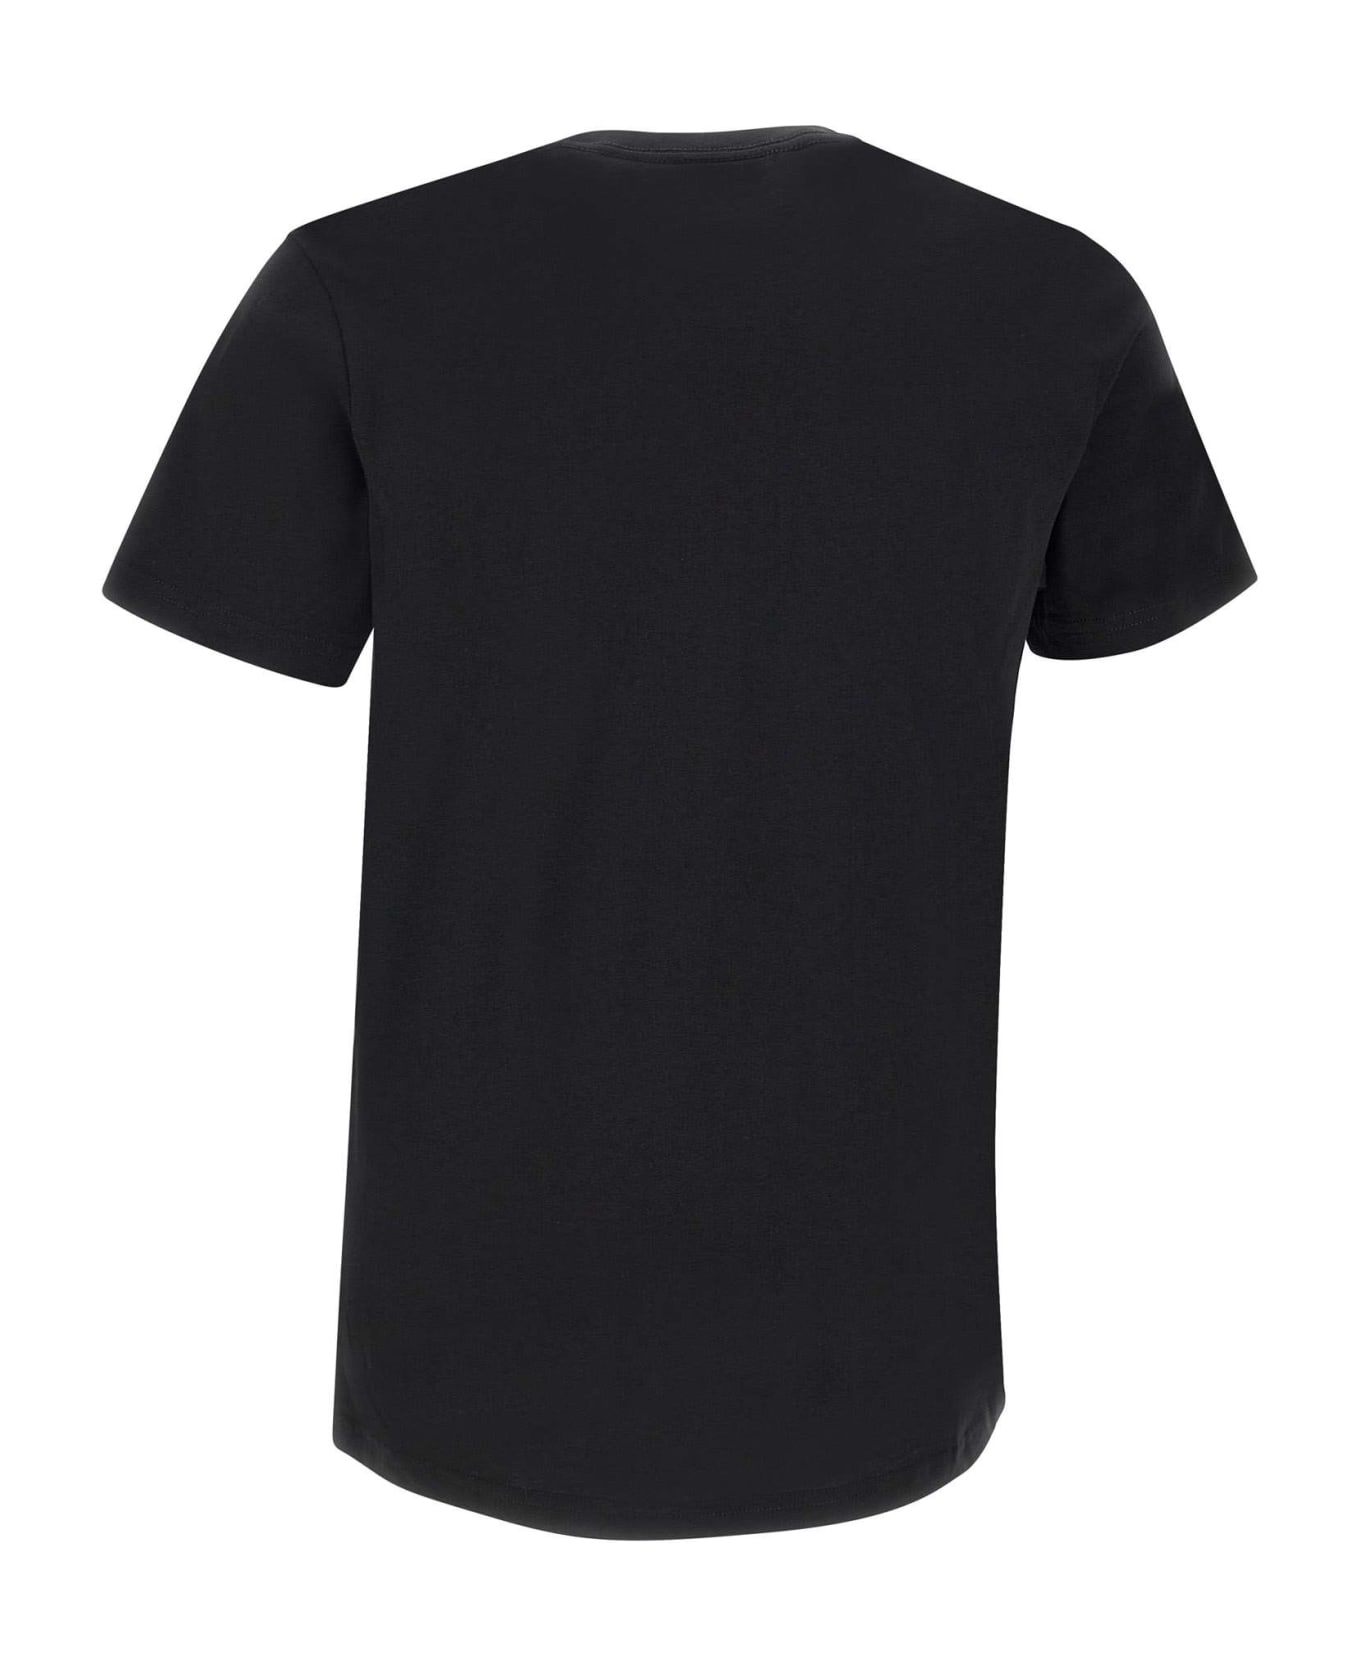 Paul Smith "opposite Skull" Organic Cotton T-shirt - BLACK